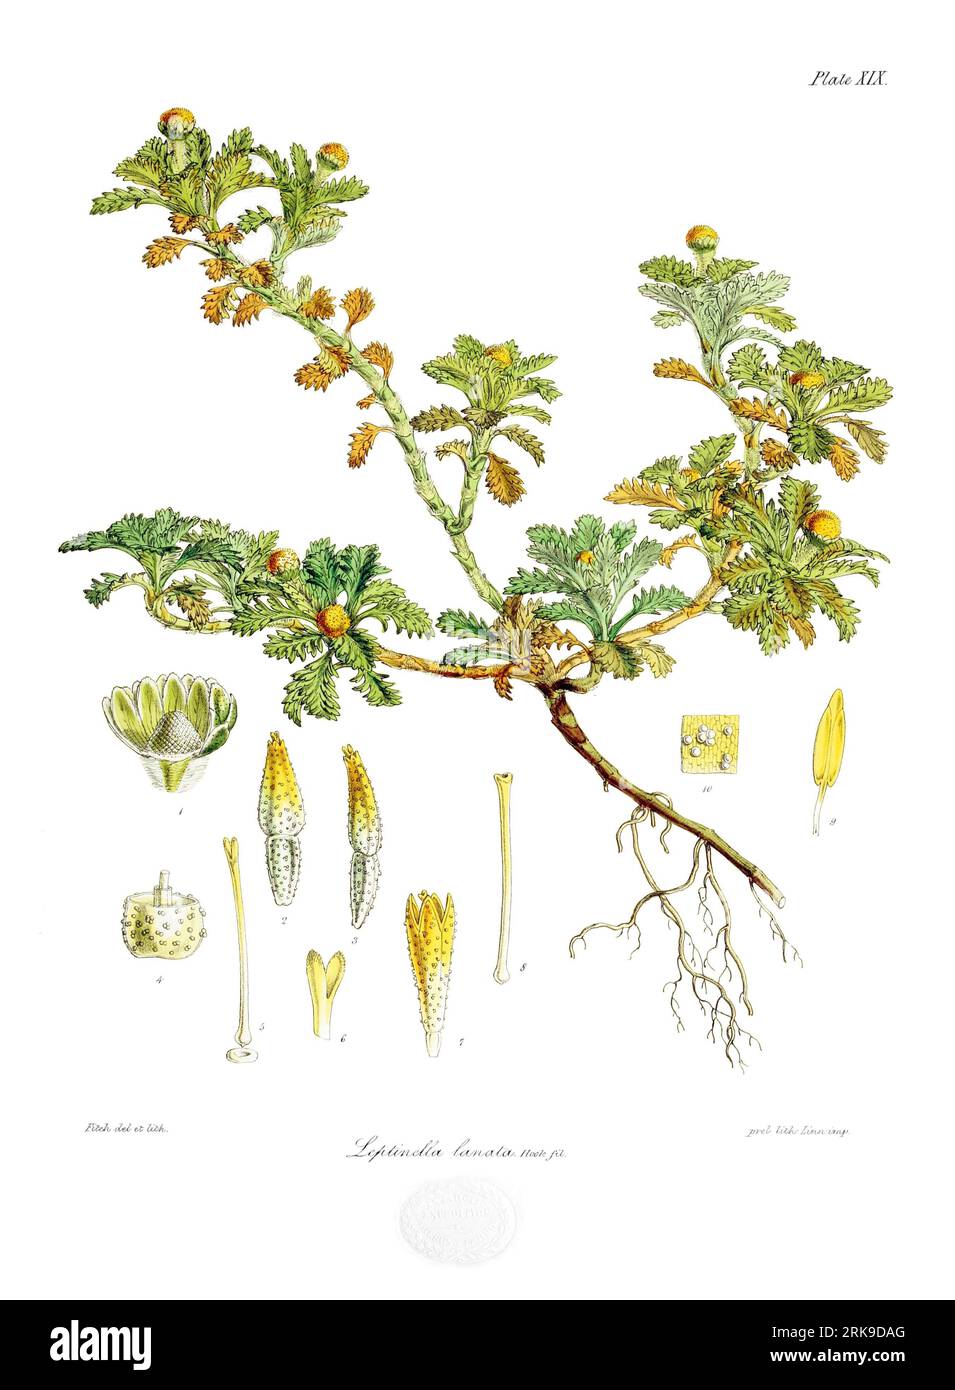 Leptinella lanata 4 July 1844 by Walter Hood Fitch Stock Photo